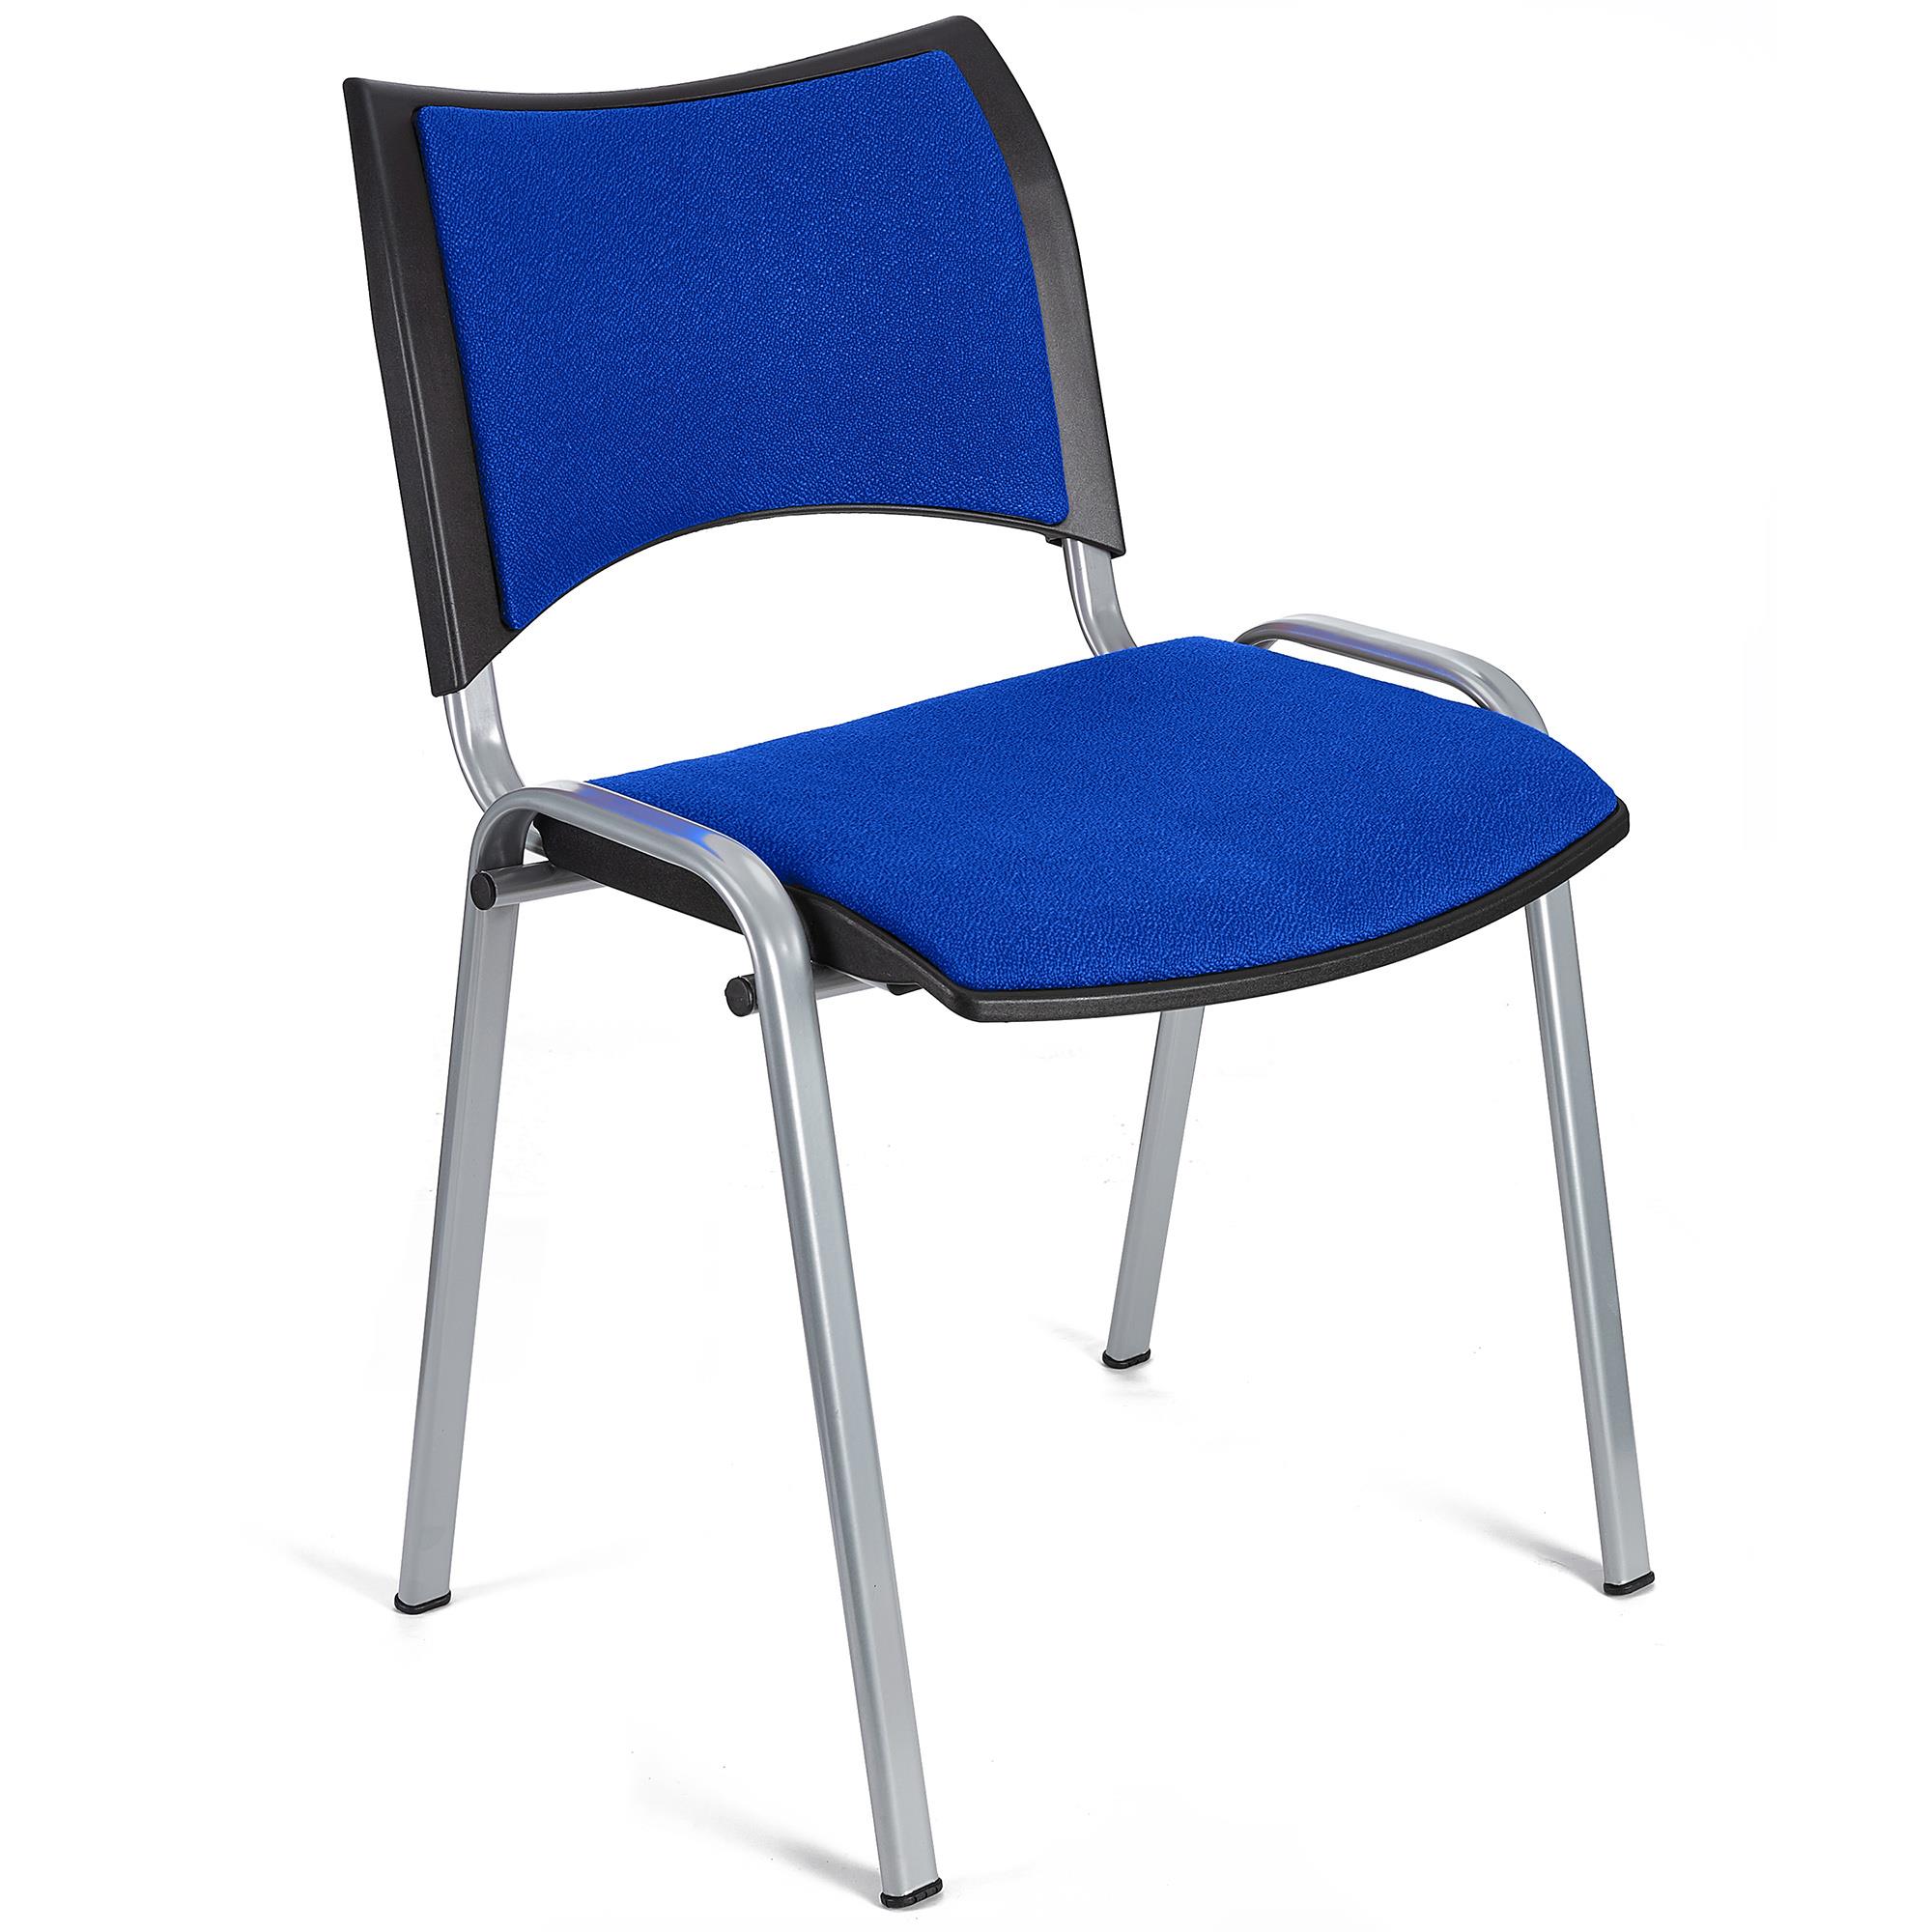 Cadeira de Visita ROMEL, Prática e Empilhável, Pernas Cinza, Em Pano, Azul